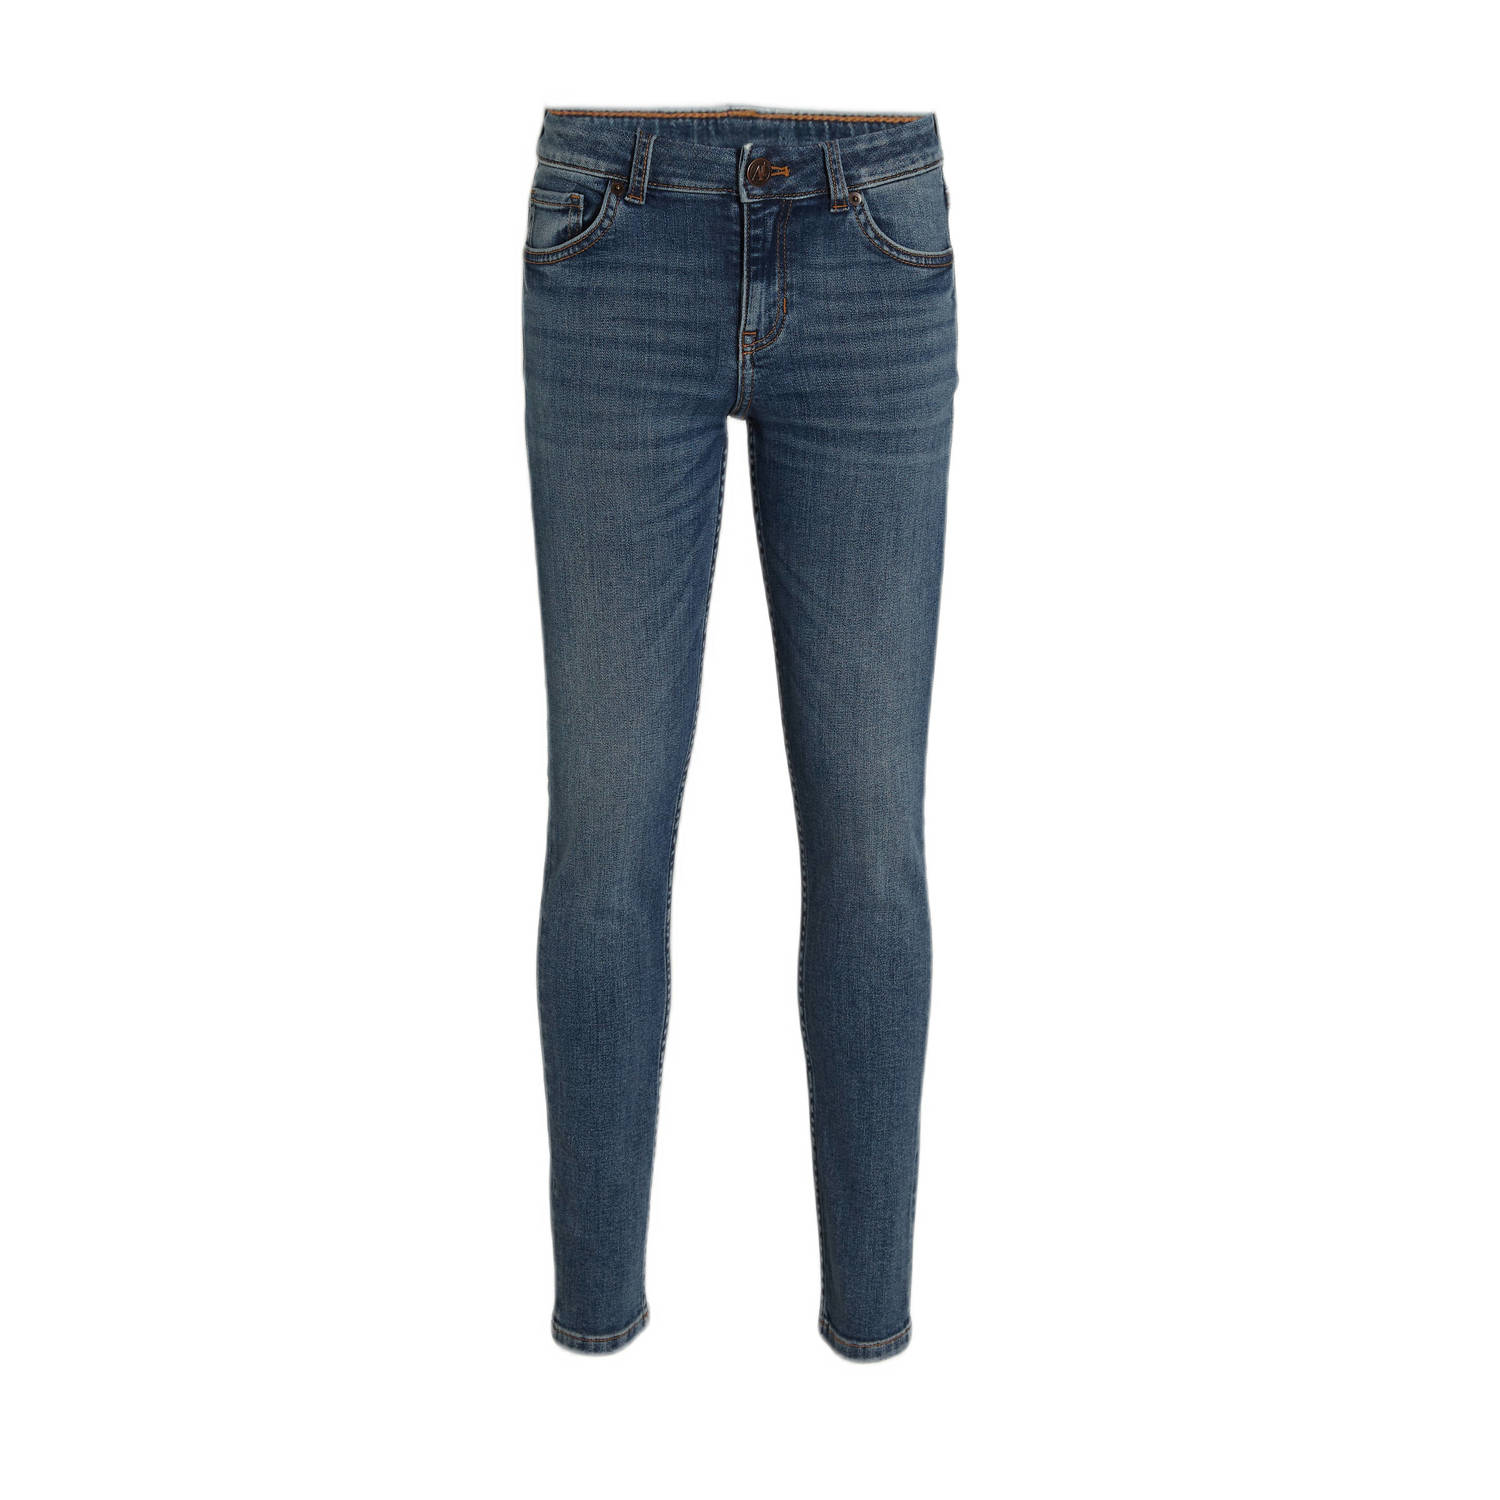 Anytime skinny jeans mid blue Blauw Jongens Denim 116